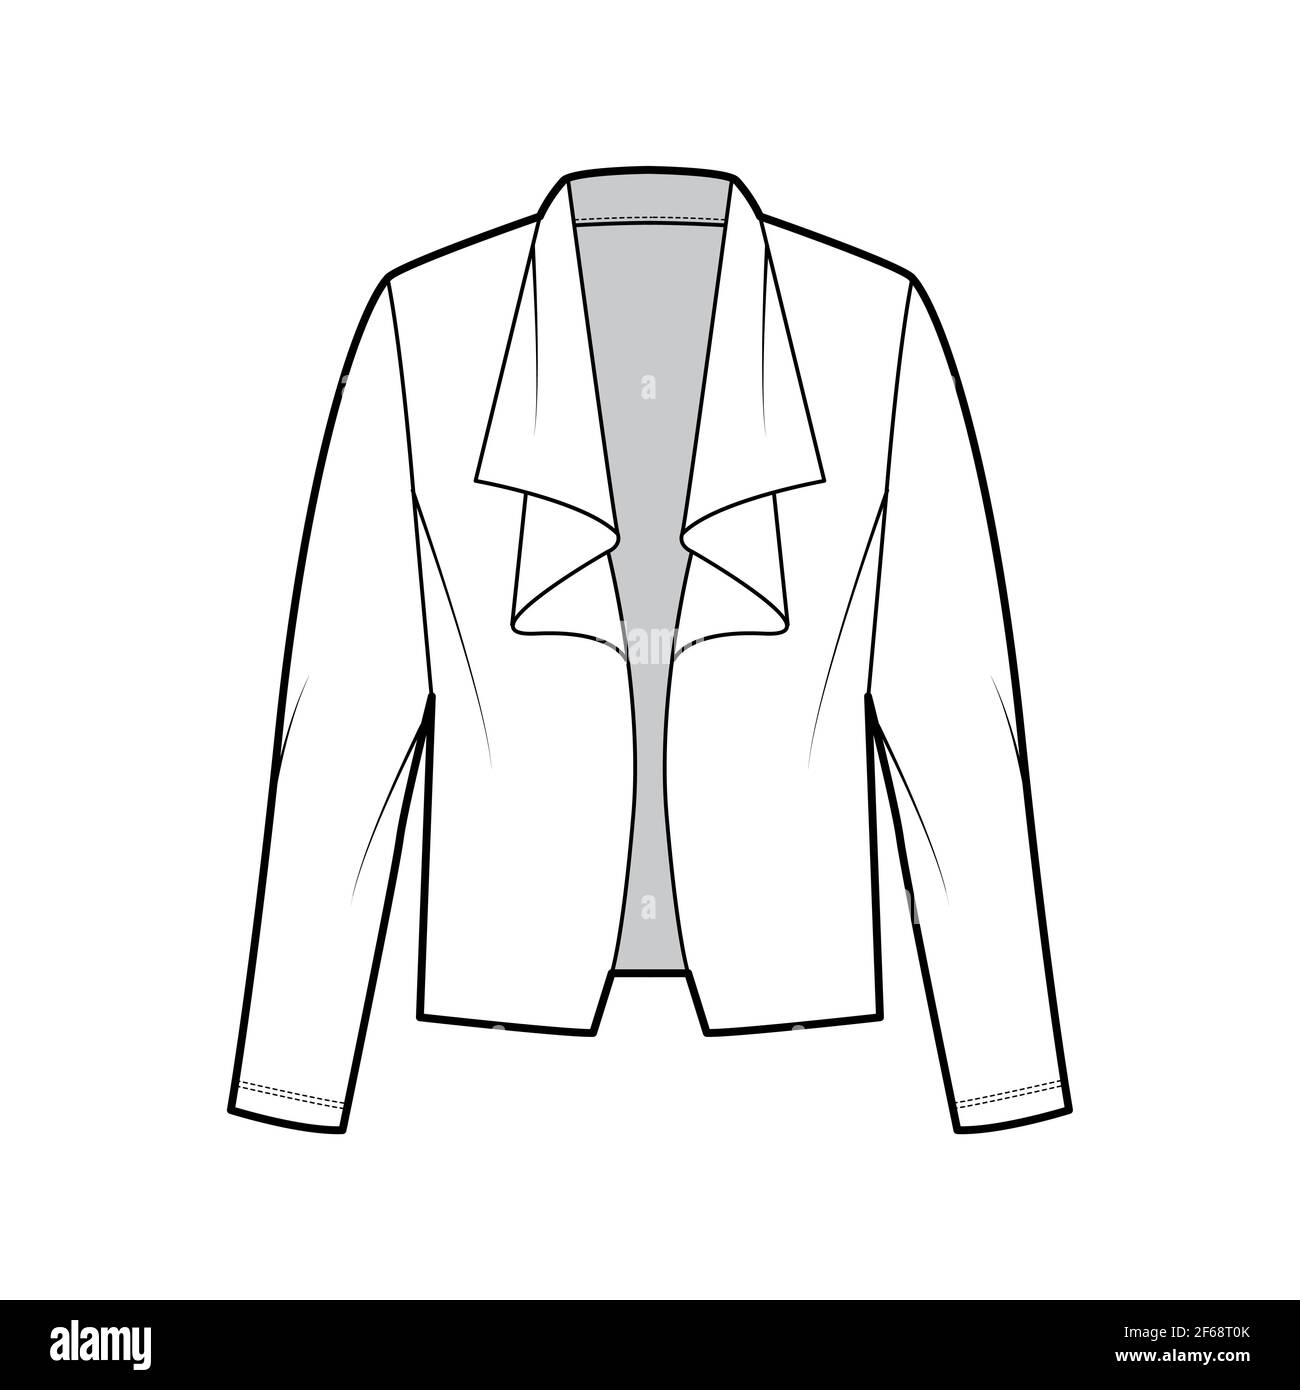 Roomy jacket technical fashion illustration with oversized, long ...